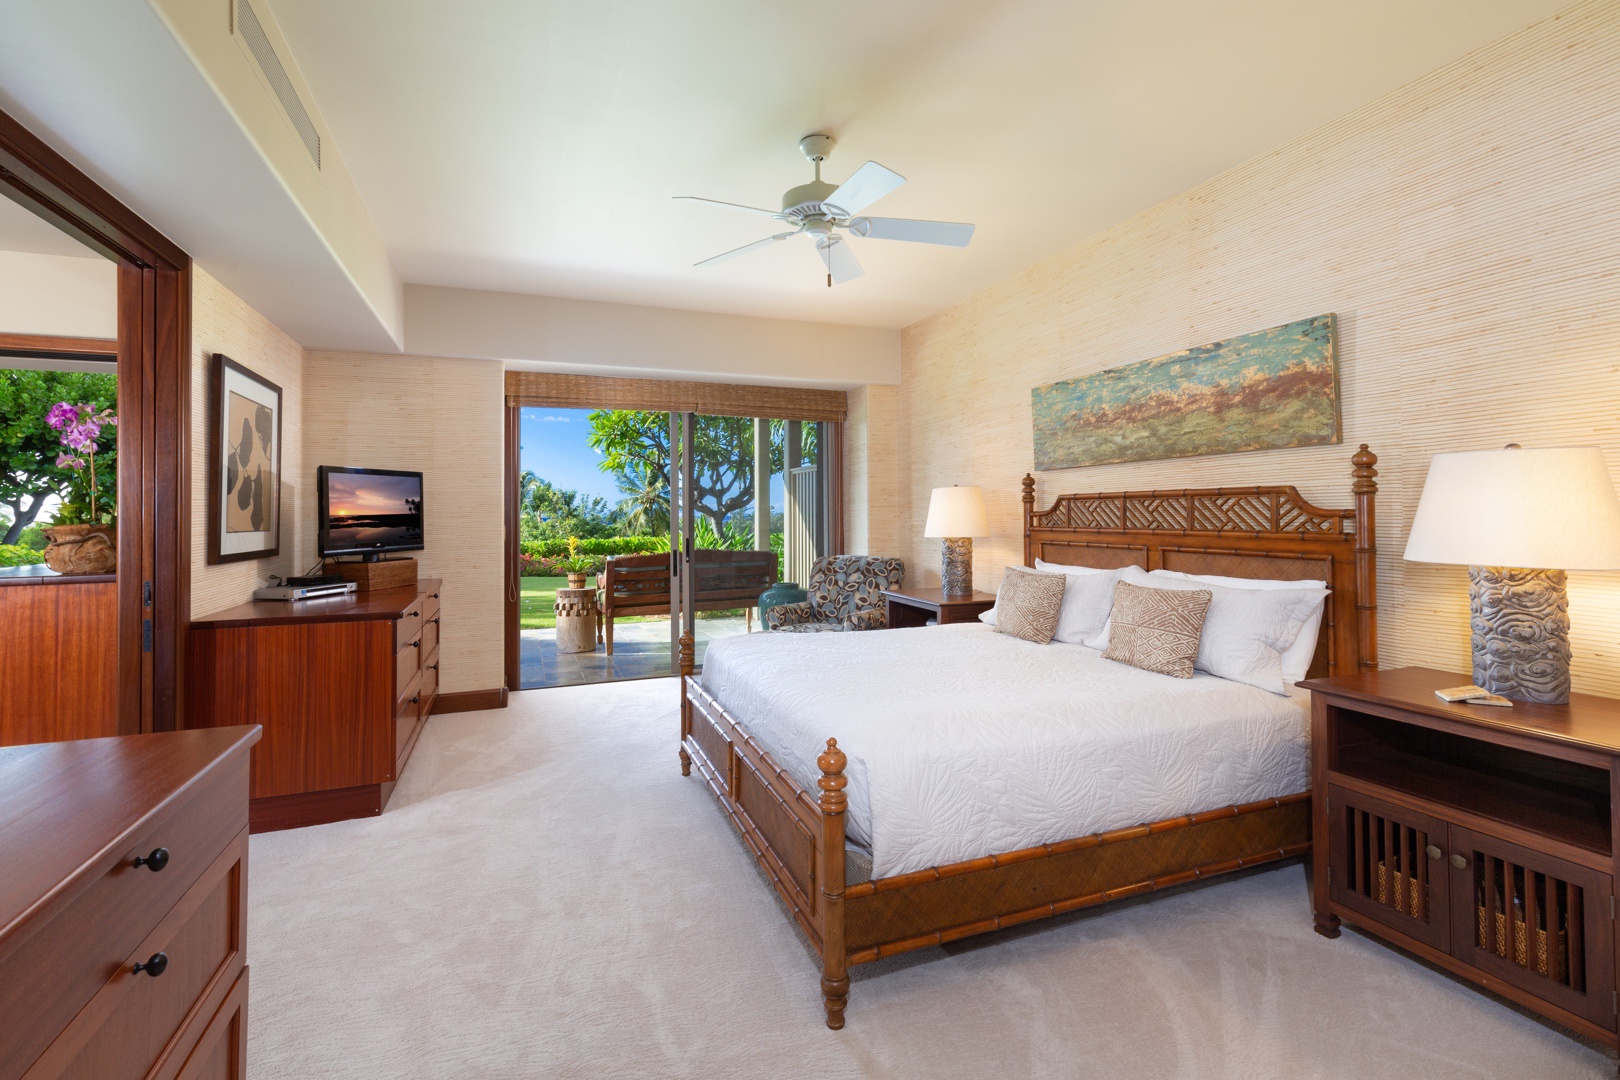 Kailua Kona Vacation Rentals, 3BD Ke Alaula Villa (210A) at Four Seasons Resort at Hualalai - Primary suite with king bed, flat screen television, and private lanai with ocean views.